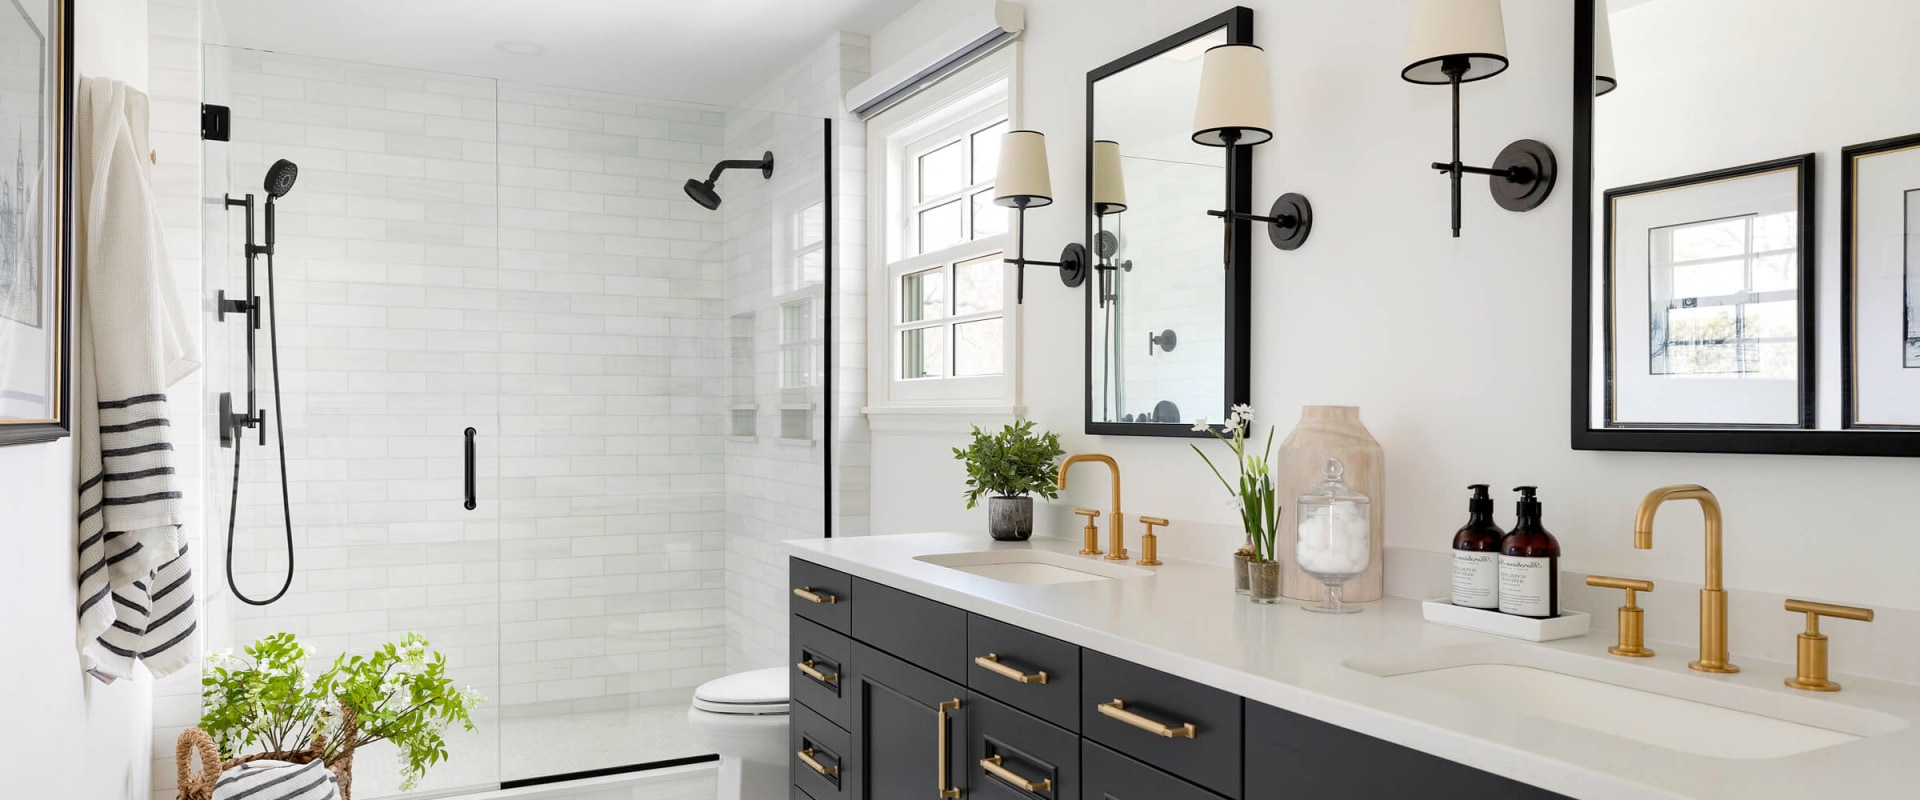 Bathroom Design Ideas for Your Home Renovation